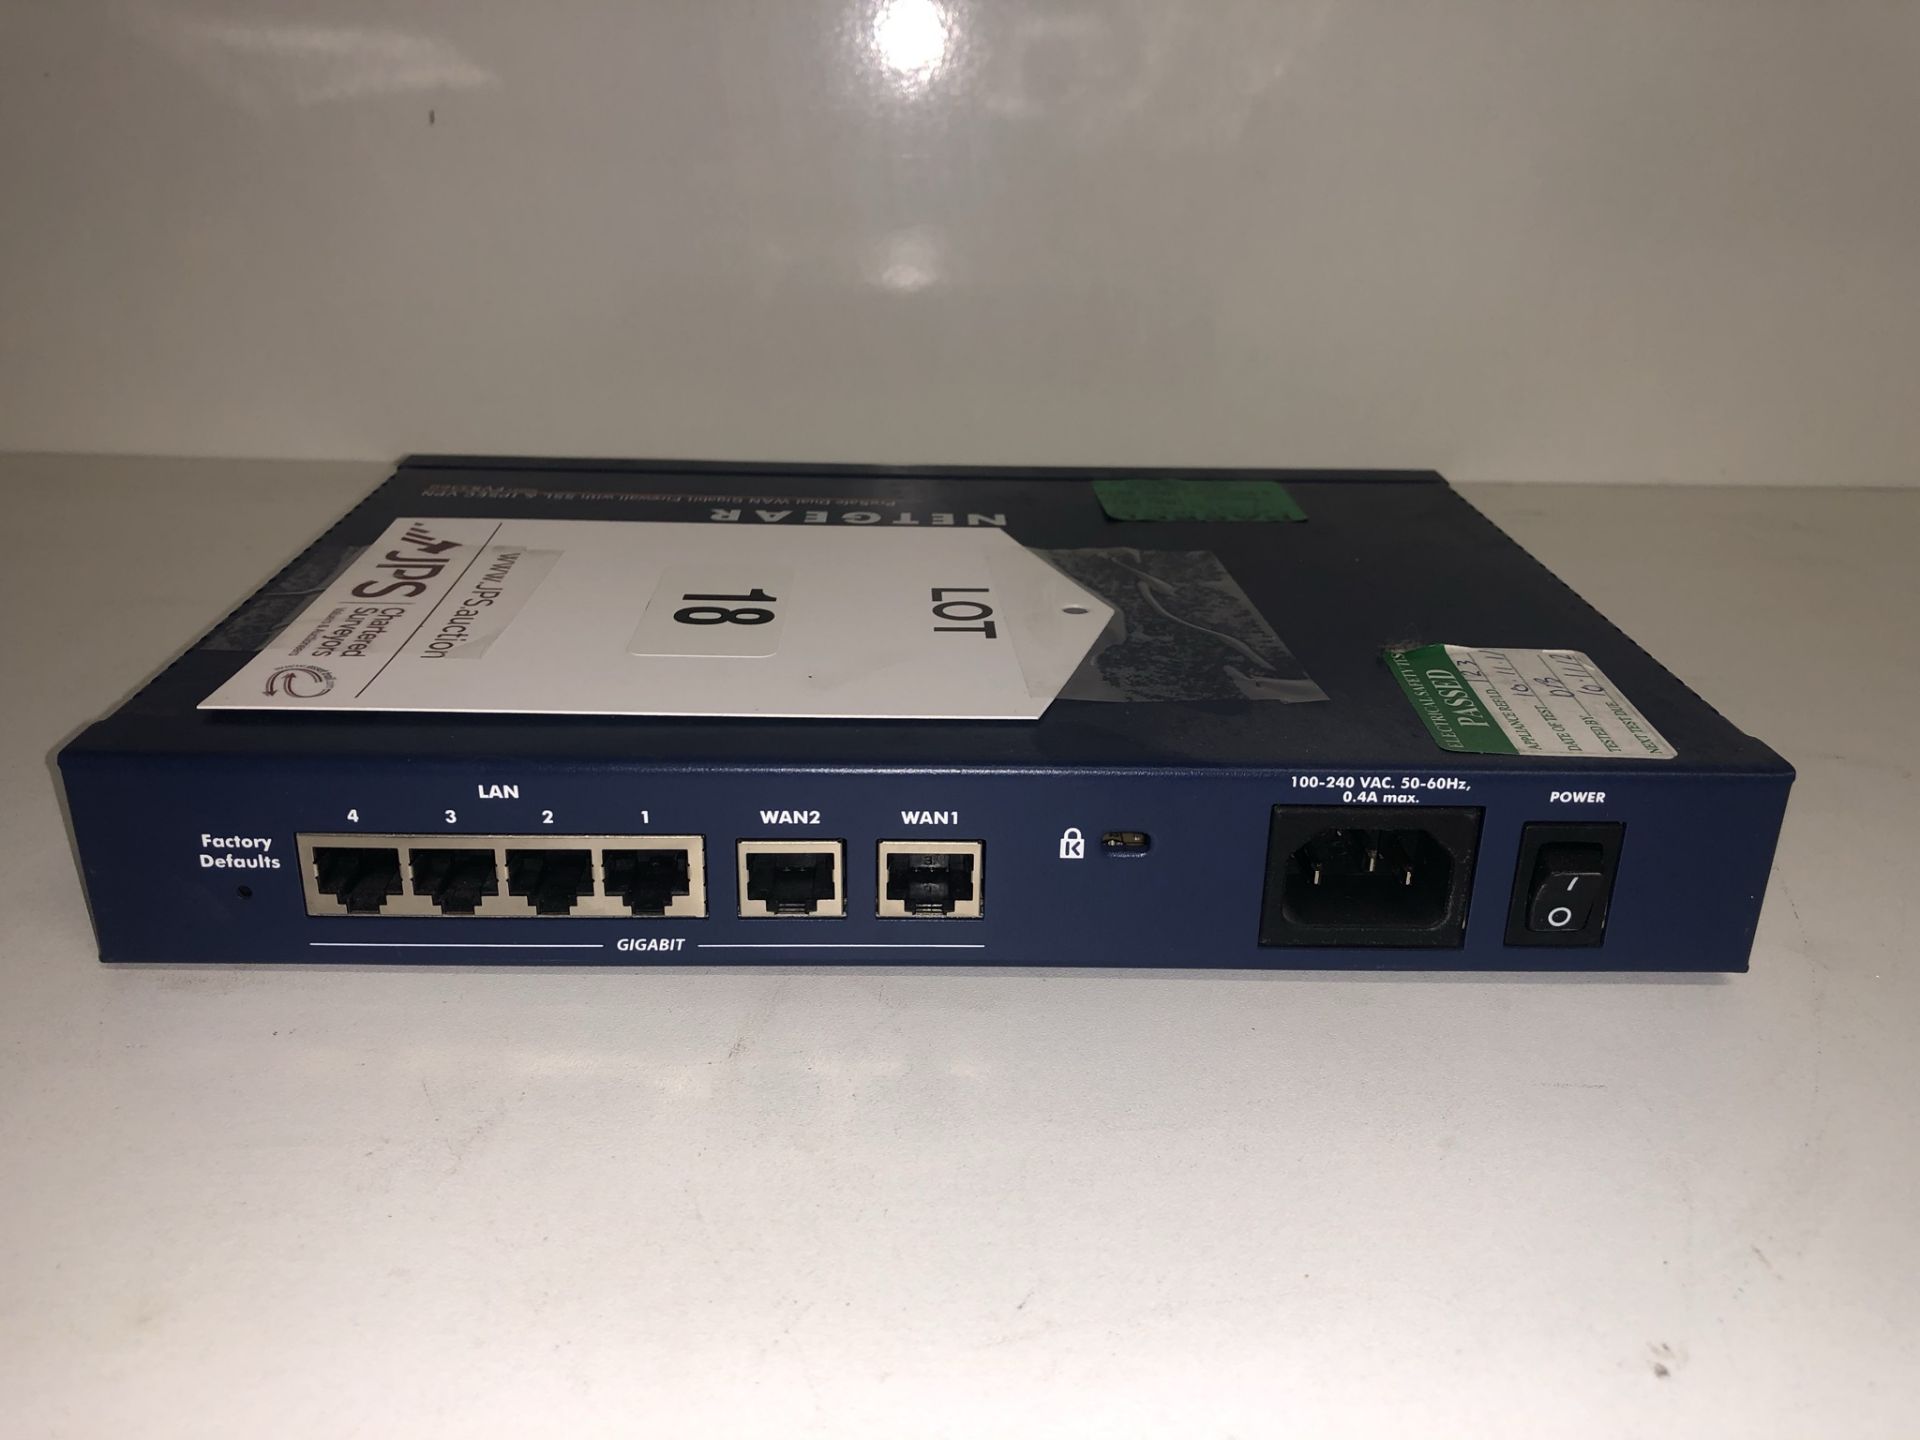 Netgear FVS336G Gigabit Firewall Router - Image 3 of 4